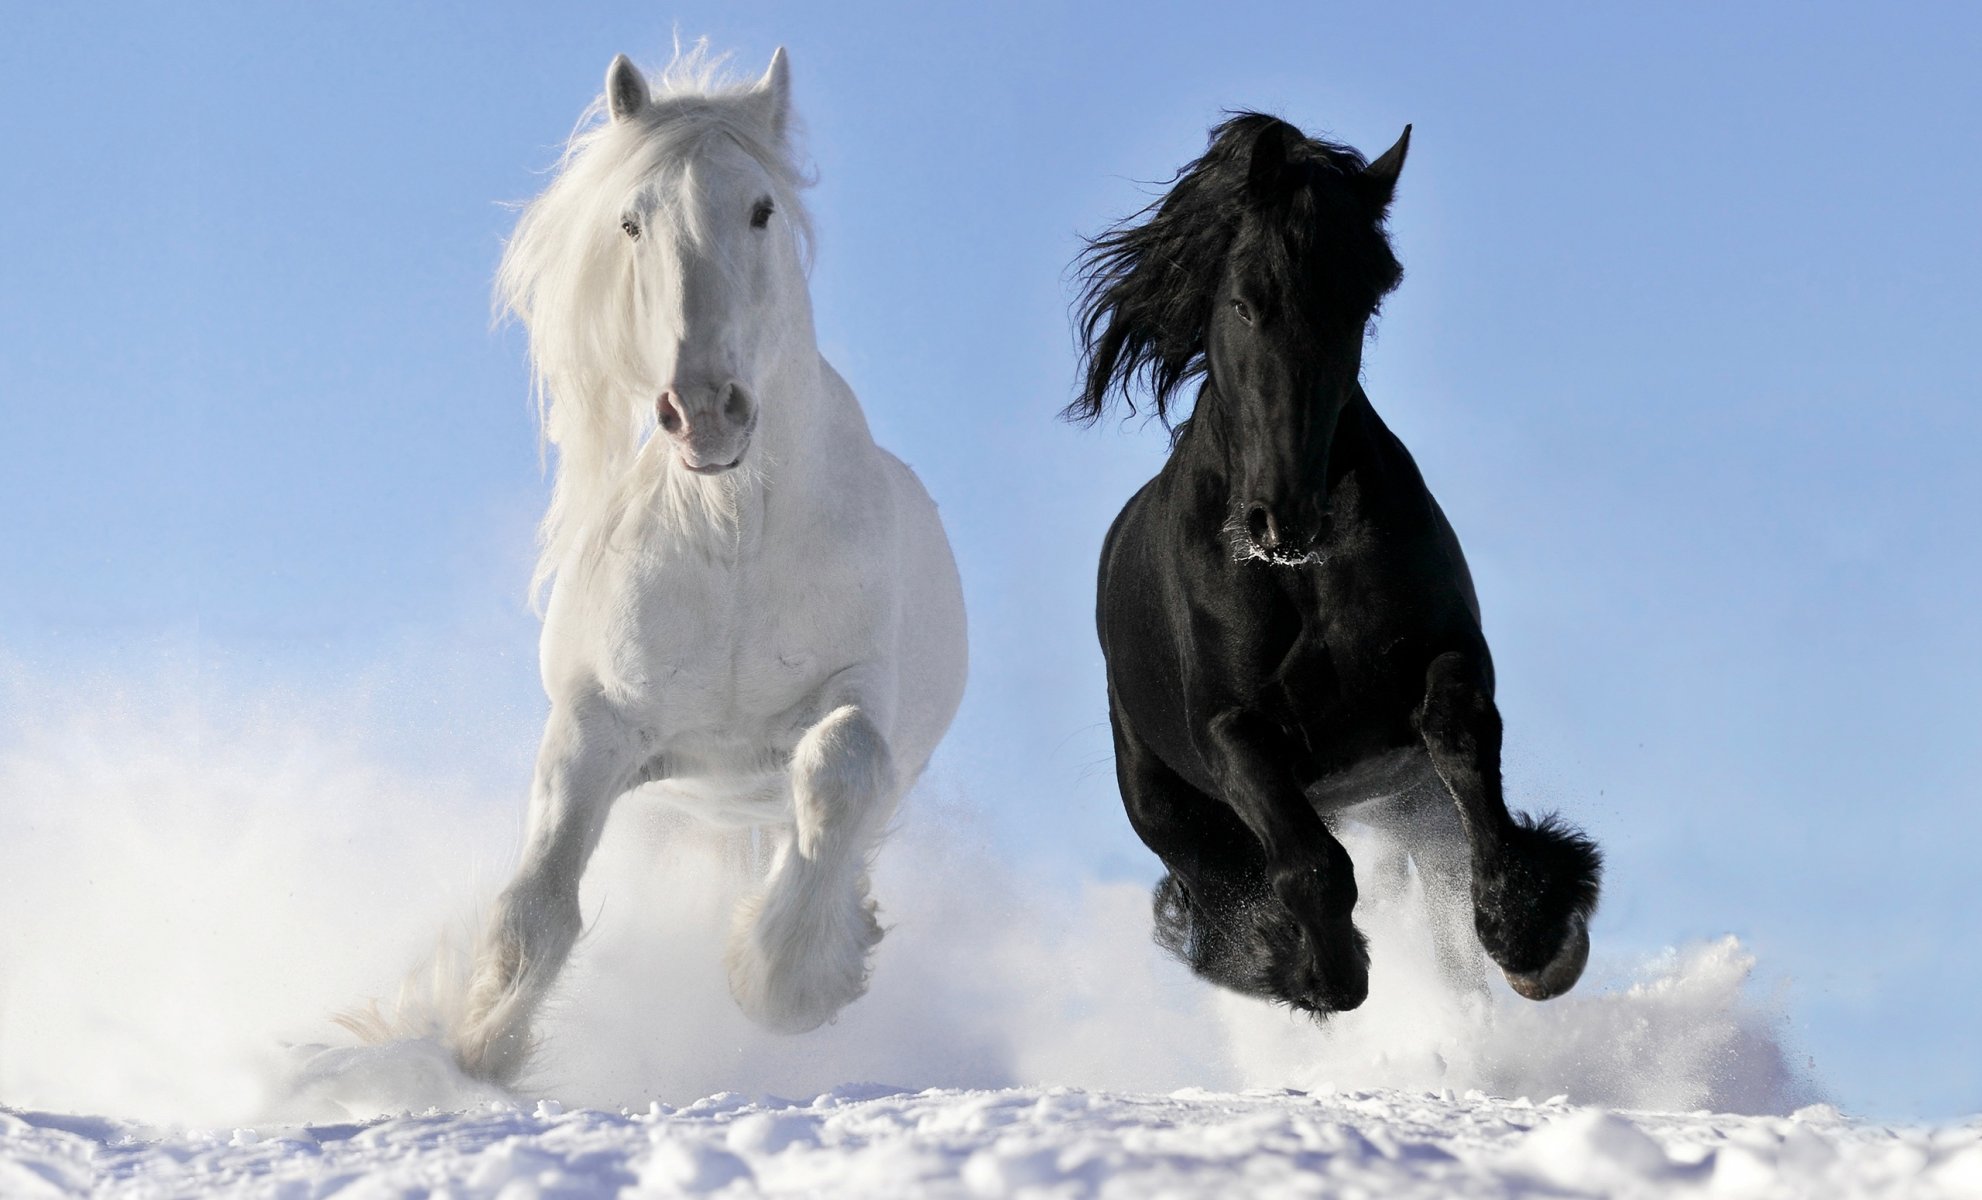 Обогреватель настенный Брест Пегас (19с425). Фризская лошадь белая. Шайр белый. Мустанг отлар.